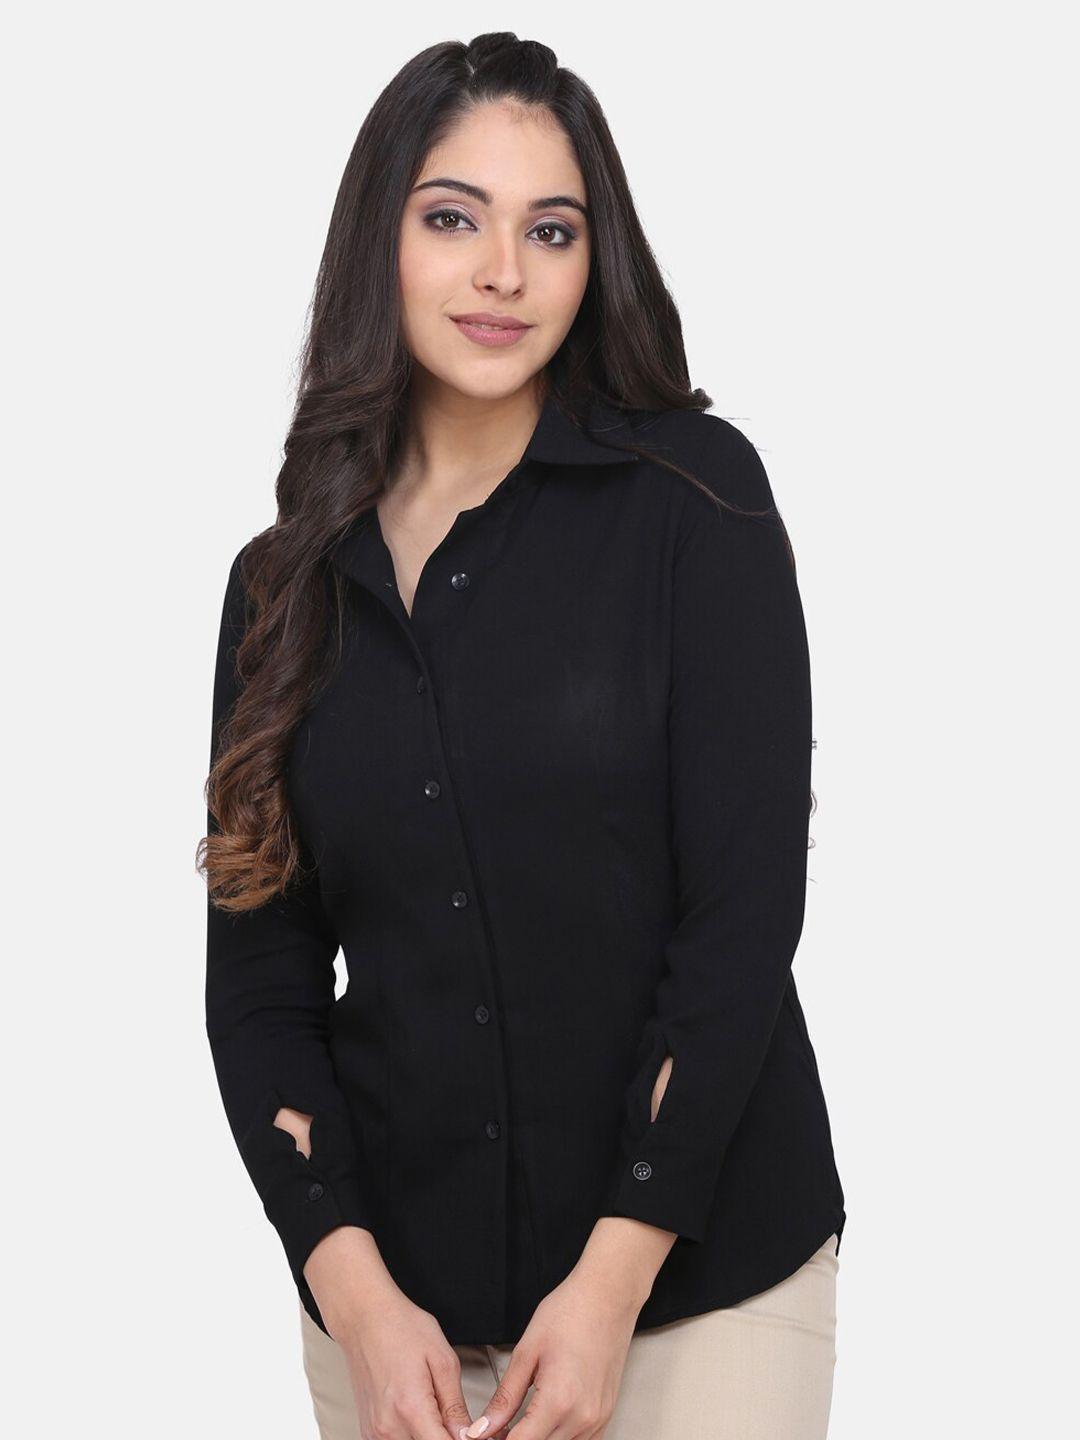 powersutra women black casual shirt